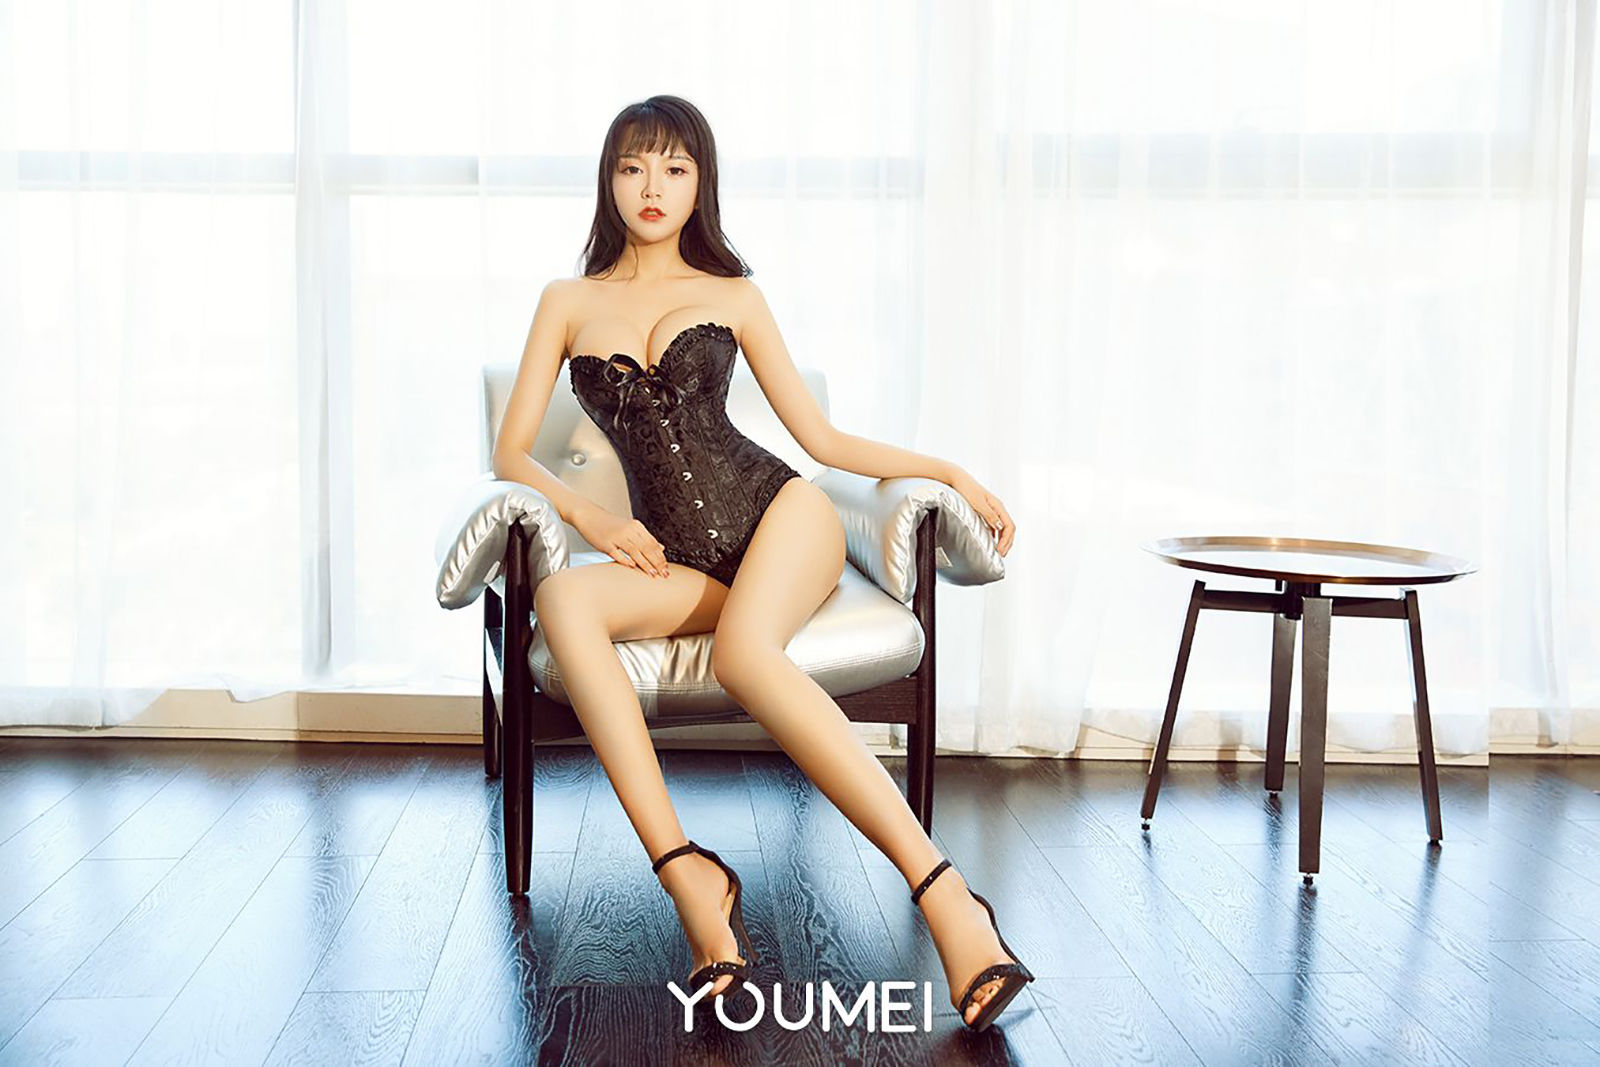 Yixuan & Meow Star “Women’s Love” [Youmei Youmei] Vol.047 photo album